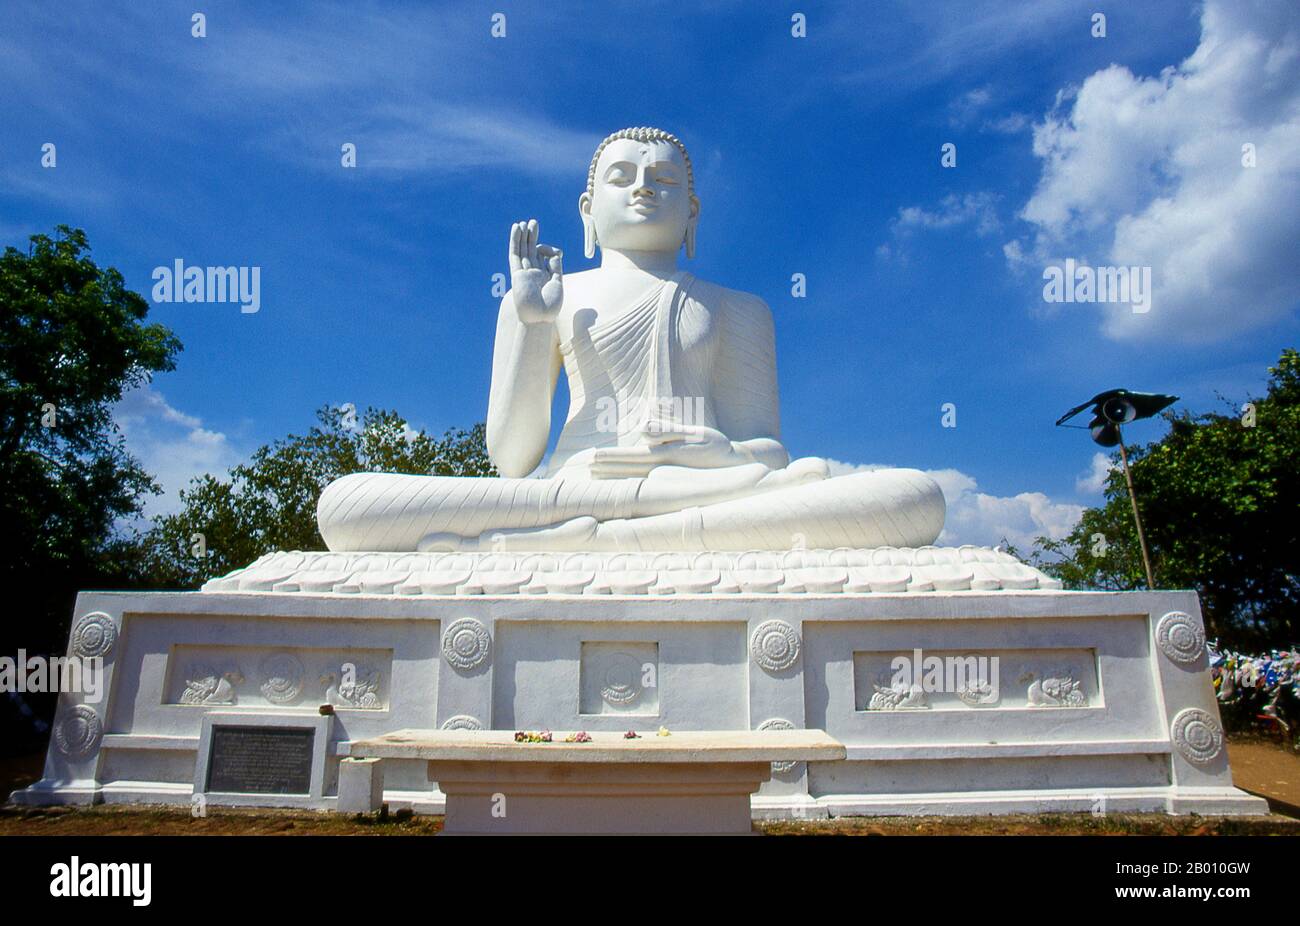 Sri Lanka: Buda gigante sentado en Ambasthala Dagoba, Mihintale. Mihintale es un pico de montaña cerca de Anuradhapura que se cree por Sri Lankans para ser el lugar de un encuentro entre el monje budista Mahinda y el rey Devanampiyatissa que inauguró la presencia del budismo en Sri Lanka. Ahora es un lugar de peregrinación, y el sitio de varios monumentos religiosos y estructuras abandonadas. Foto de stock